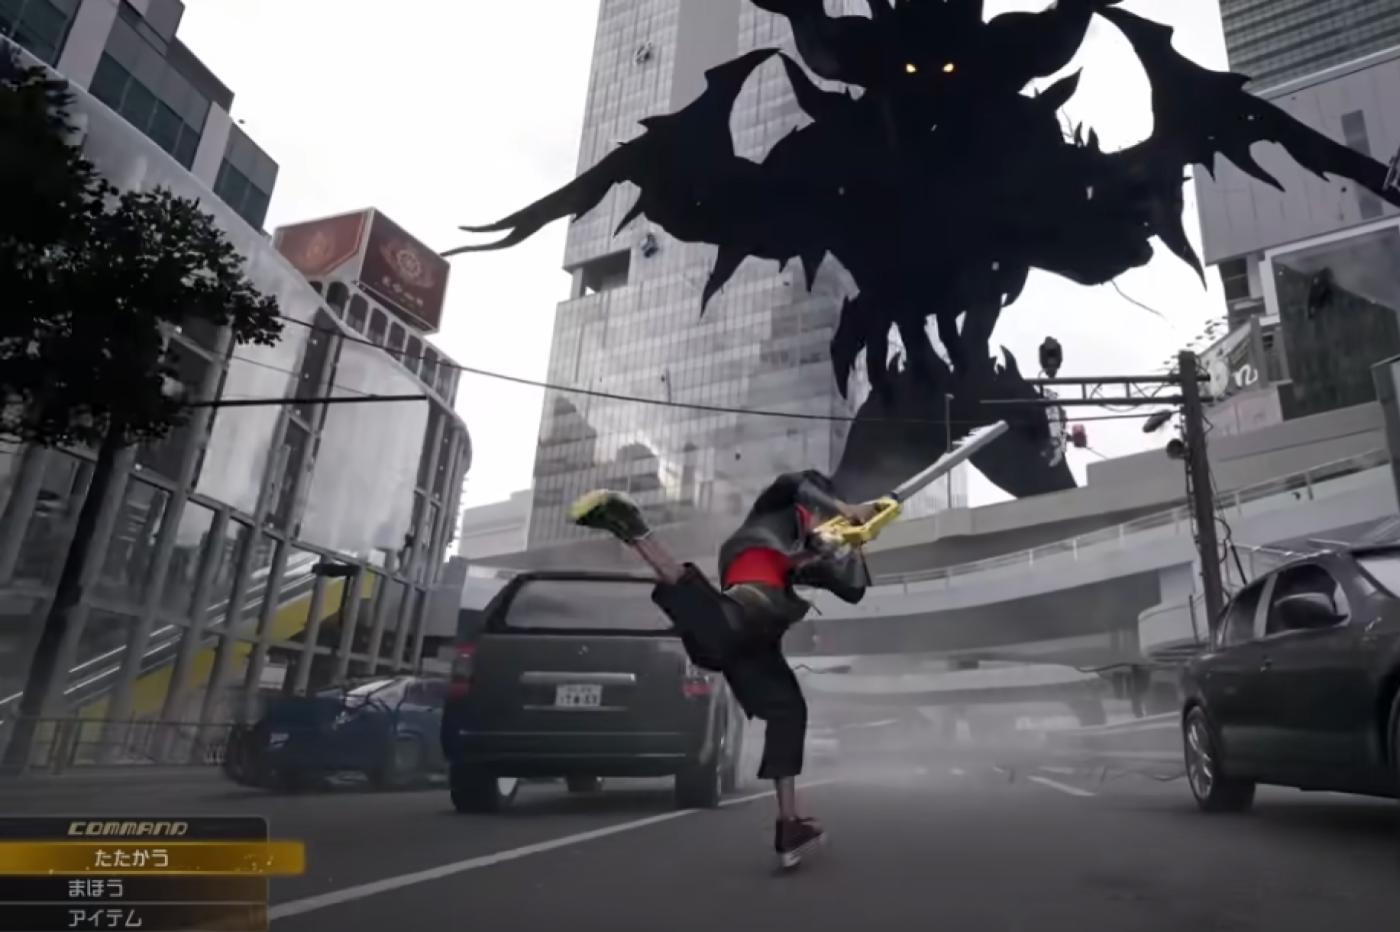 Capture d'écran du trailer de Kingdom Hearts 4 montrant Sora courant vers un sans-coeur géant au milieu d'une ville aux airs modernes